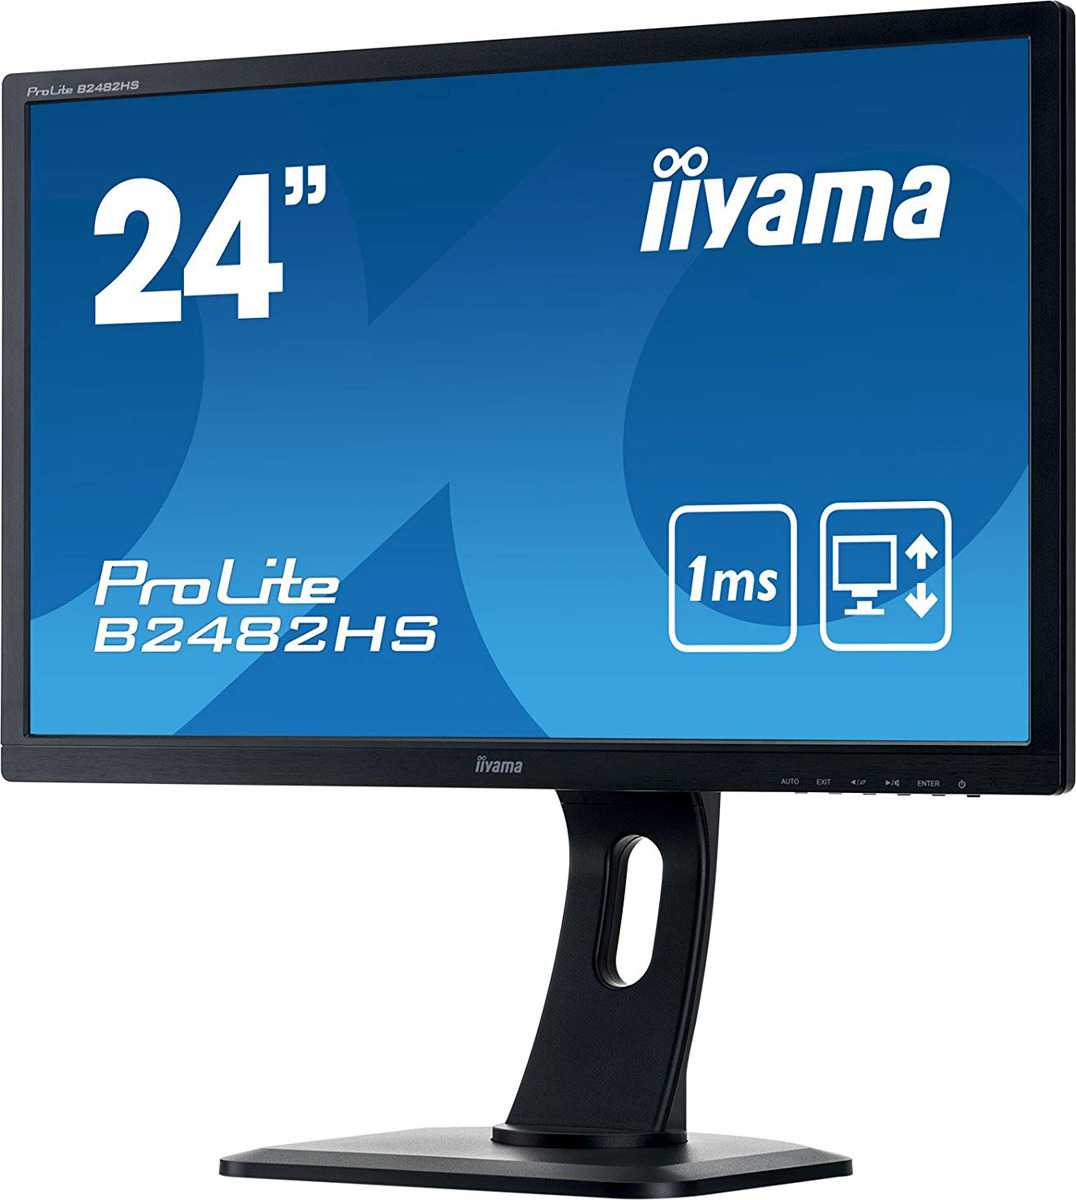 Жк монитор 23.6" iiyama prolite e2482hsd-gb1 — купить, цена и характеристики, отзывы